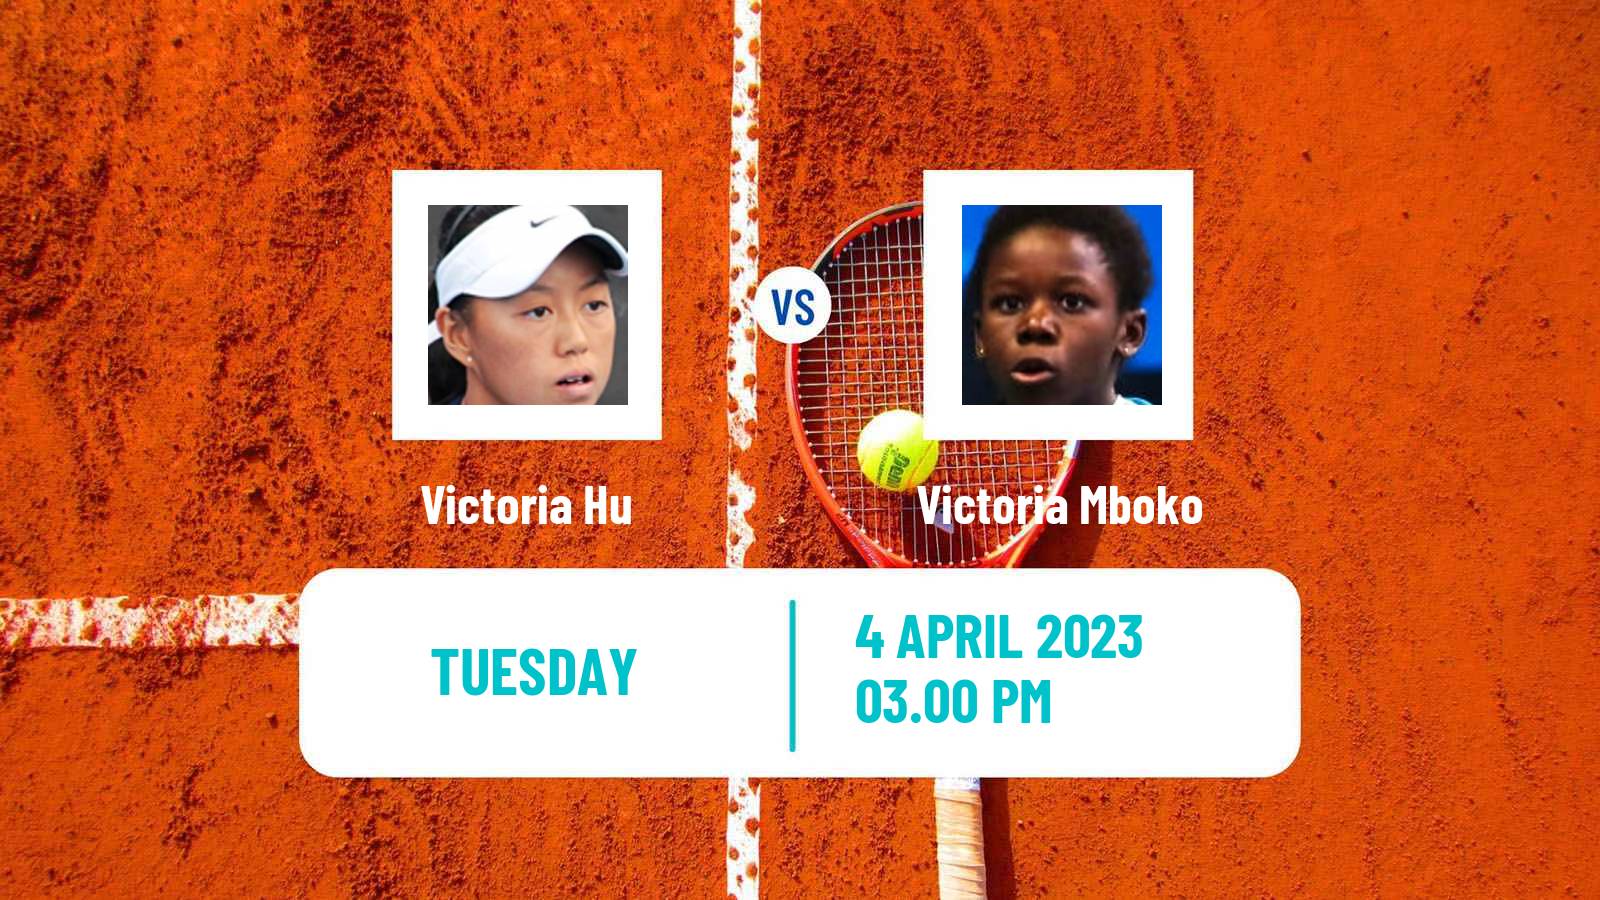 Tennis ITF Tournaments Victoria Hu - Victoria Mboko